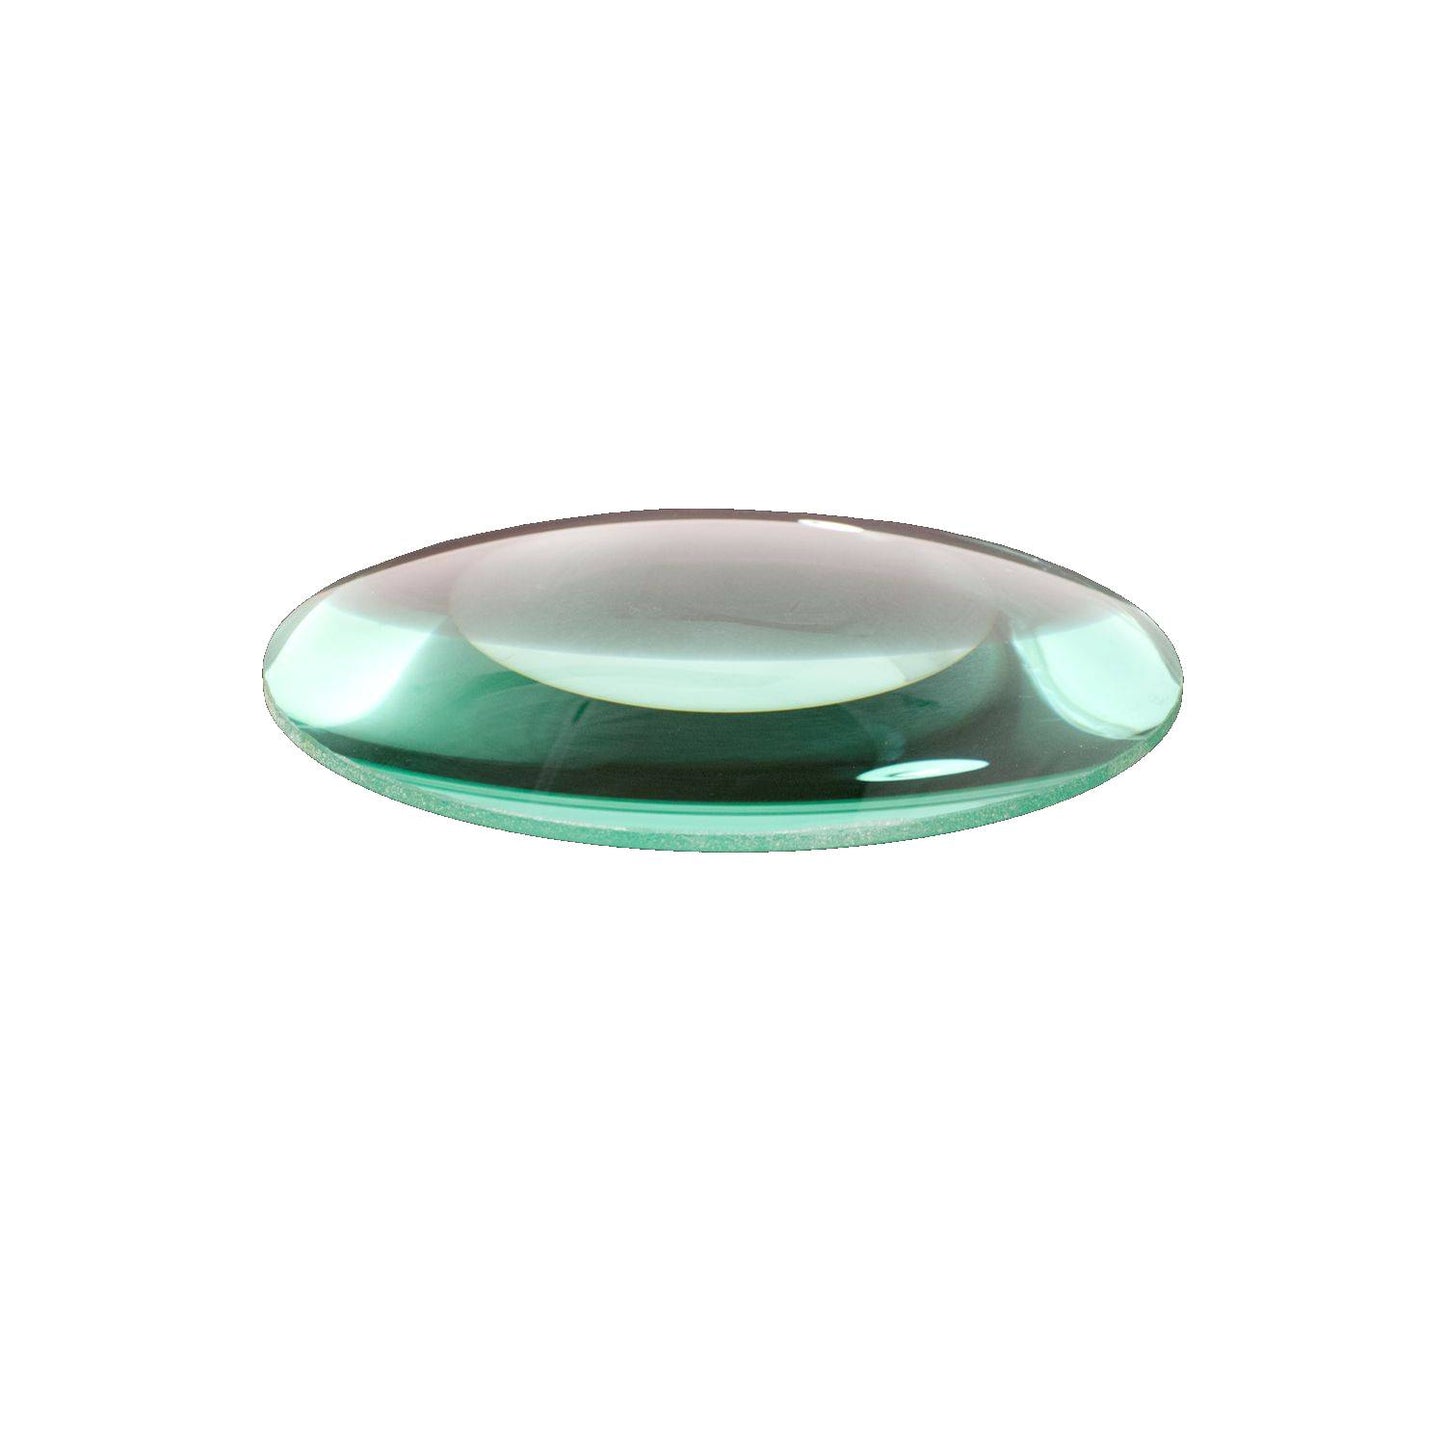 Lumeno lente in vetro cristallino o standard in 3, 5 o 8 diottrie con 125 mm